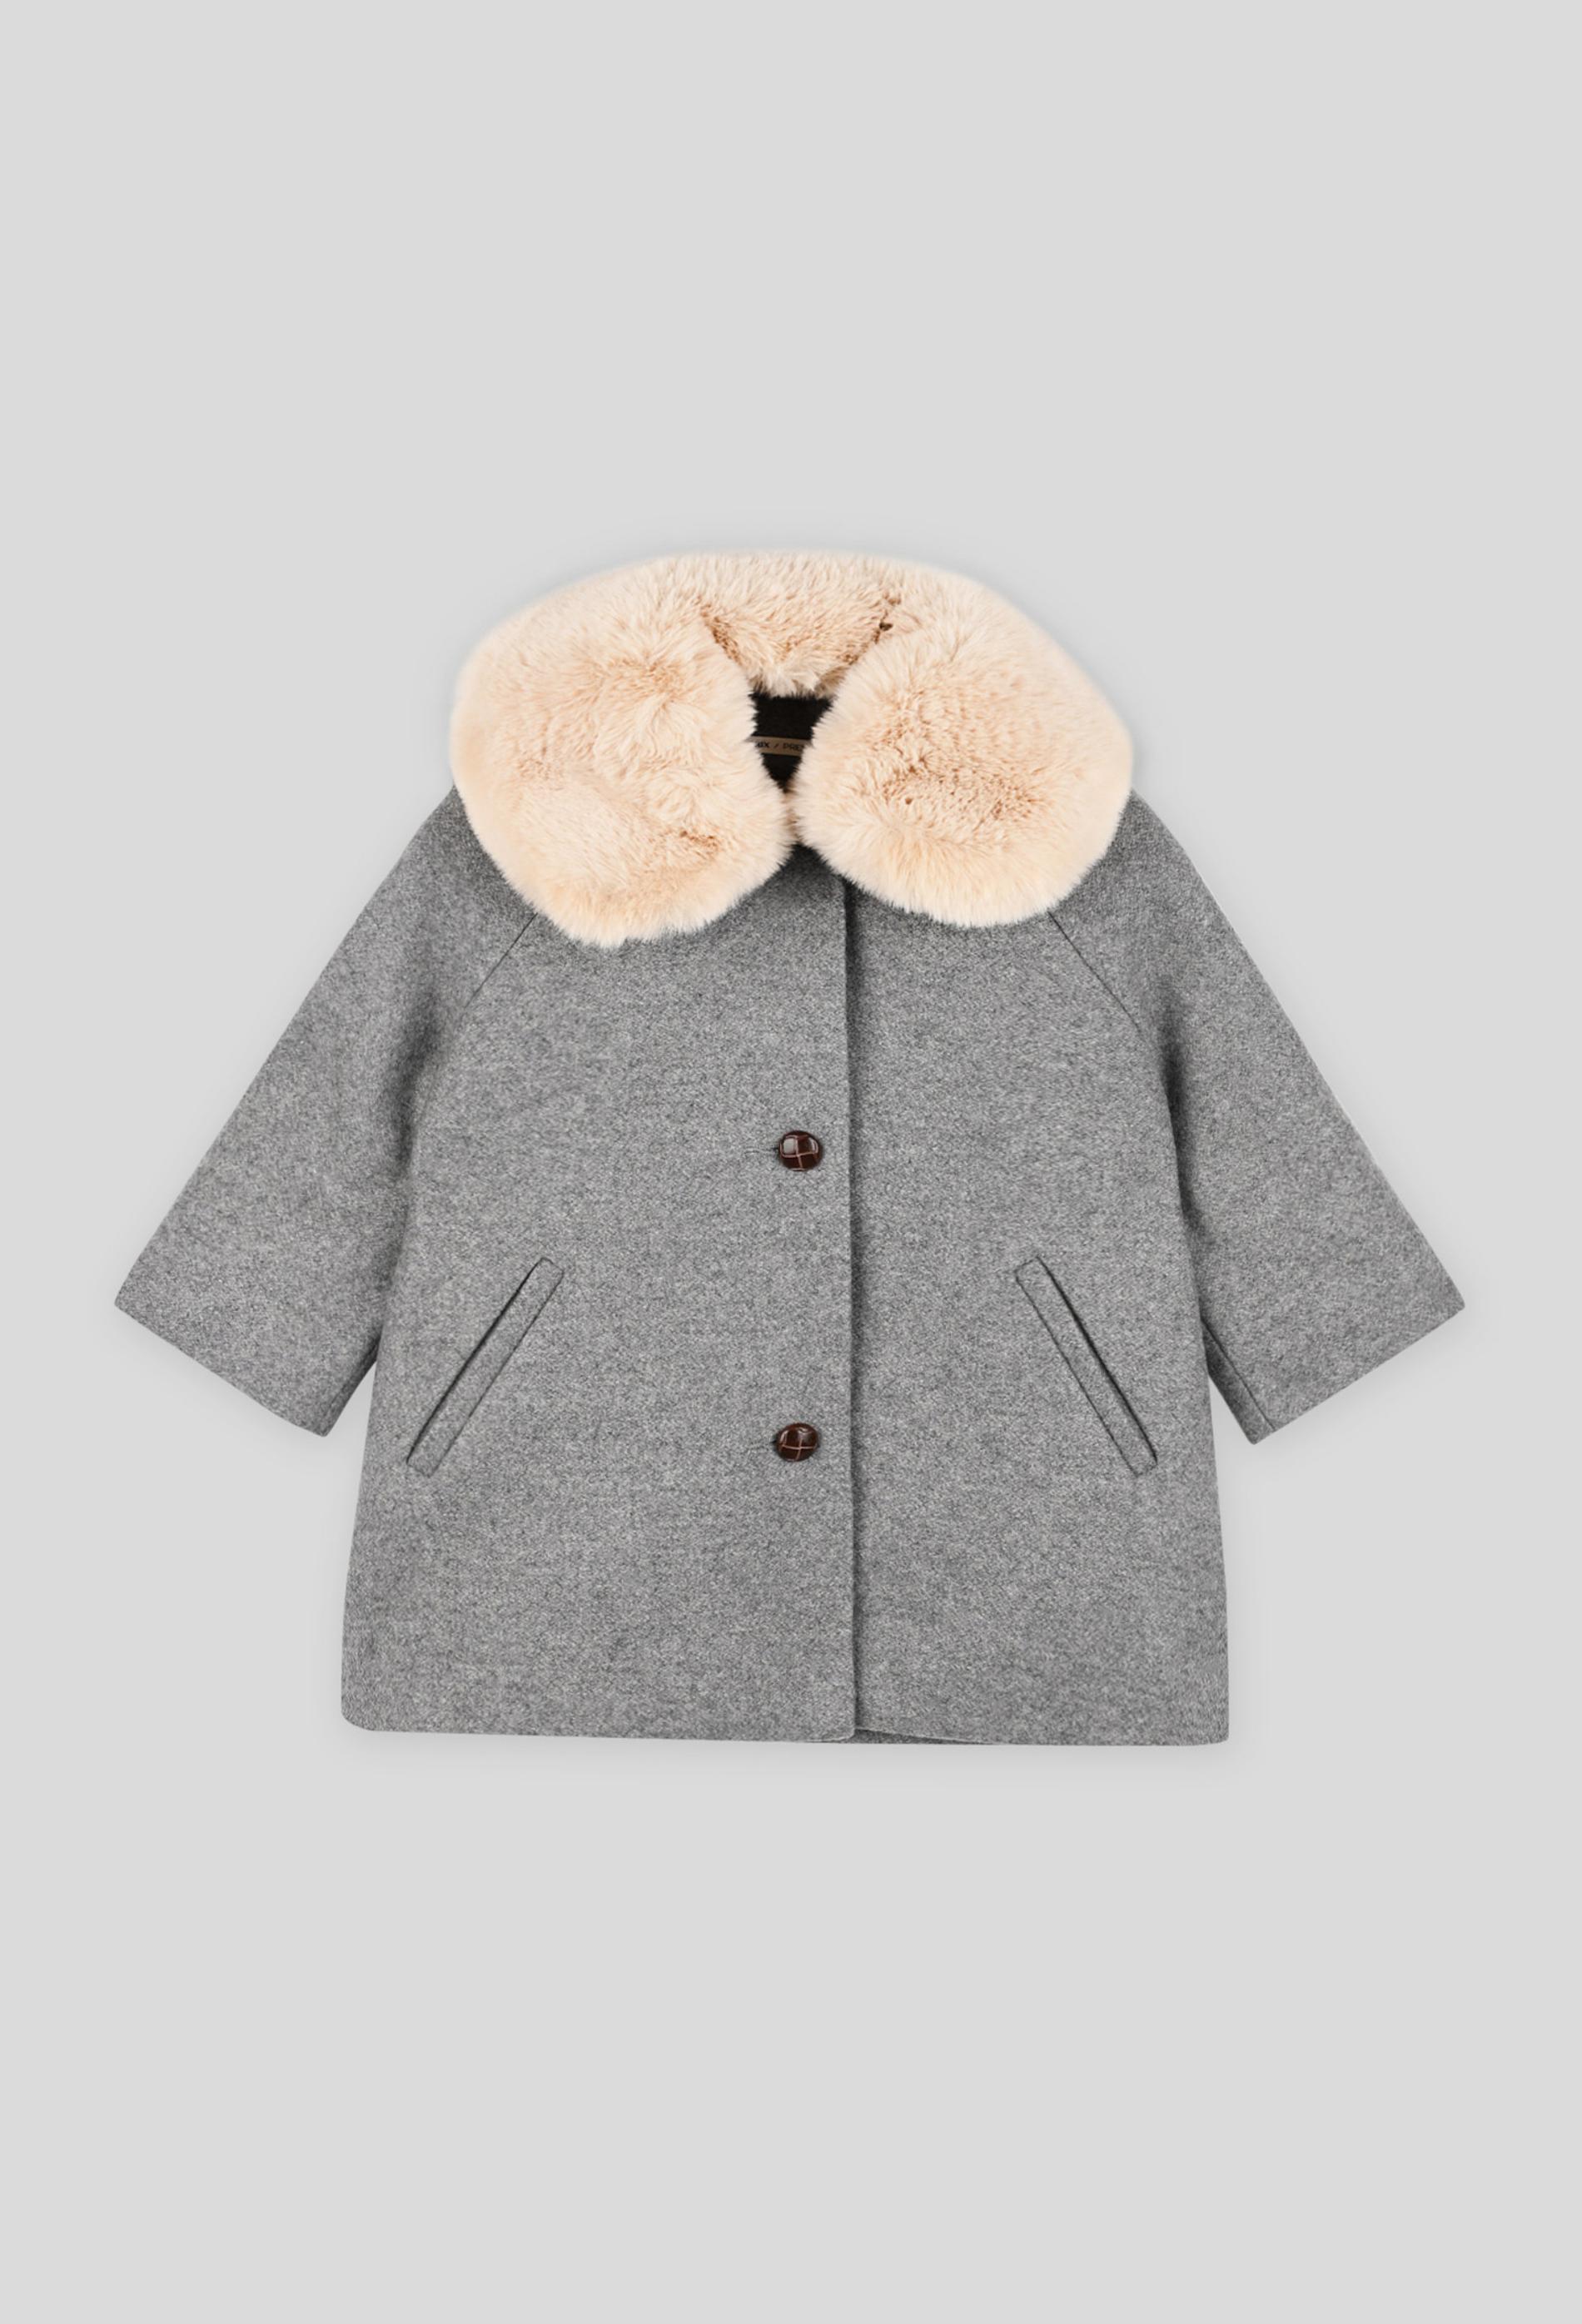 Manteau en laine uni avec col en fausse fourrure amovible manches longues, fille 12 mois gris